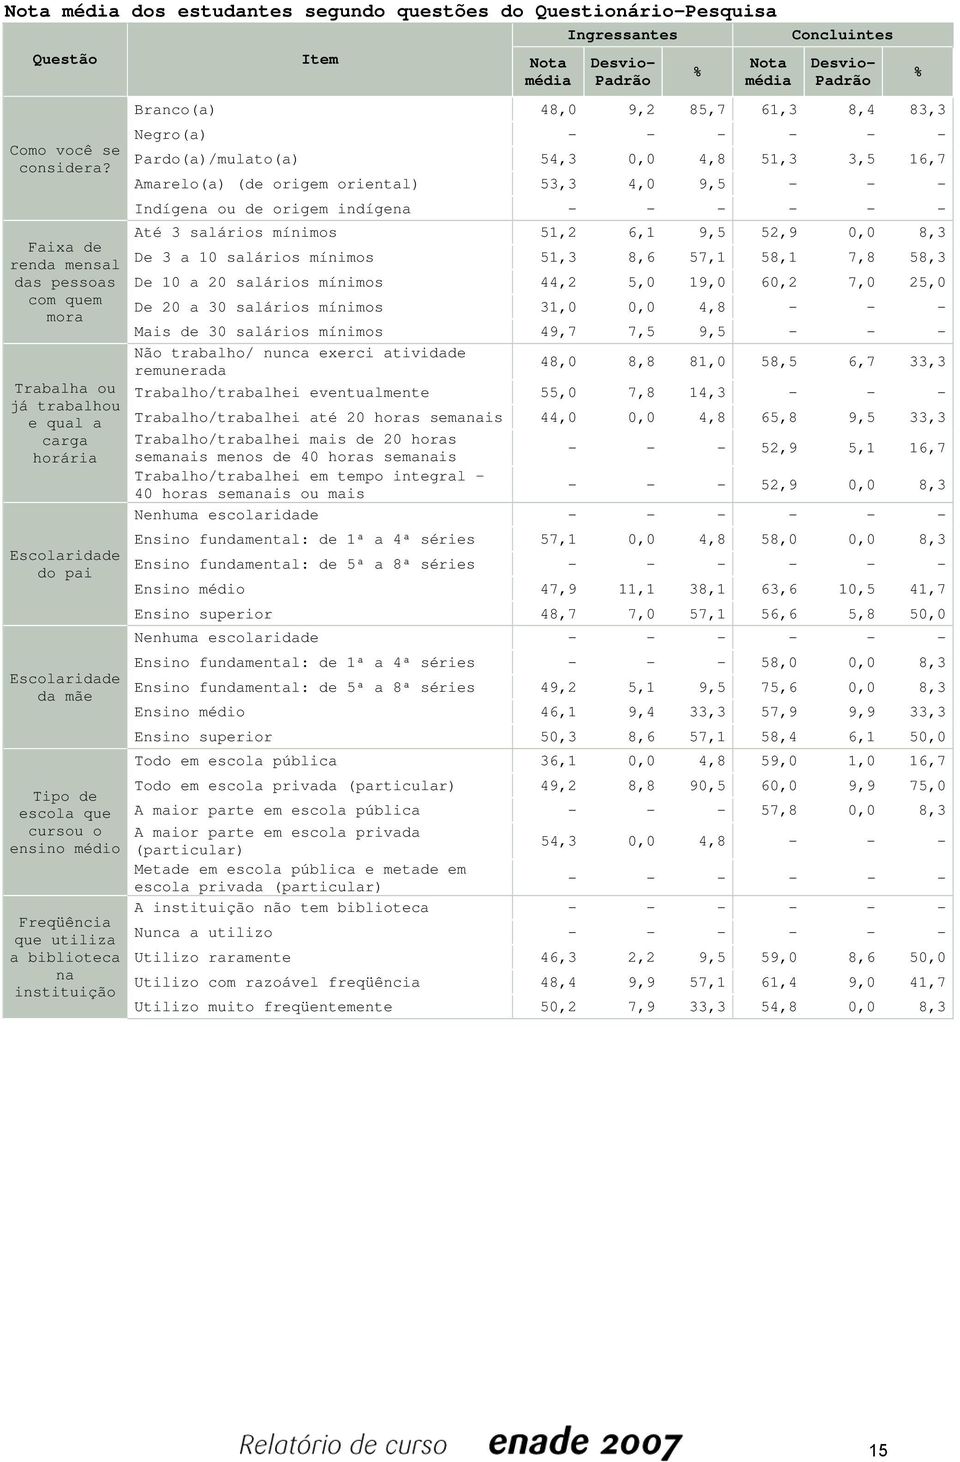 a biblioteca na instituição Item Nota média Ingressantes Padrão % Nota média Concluintes Padrão Branco(a) 48,0 9,2 85,7 61,3 8,4 83,3 Negro(a) - - - - - - Pardo(a)/mulato(a) 54,3 0,0 4,8 51,3 3,5